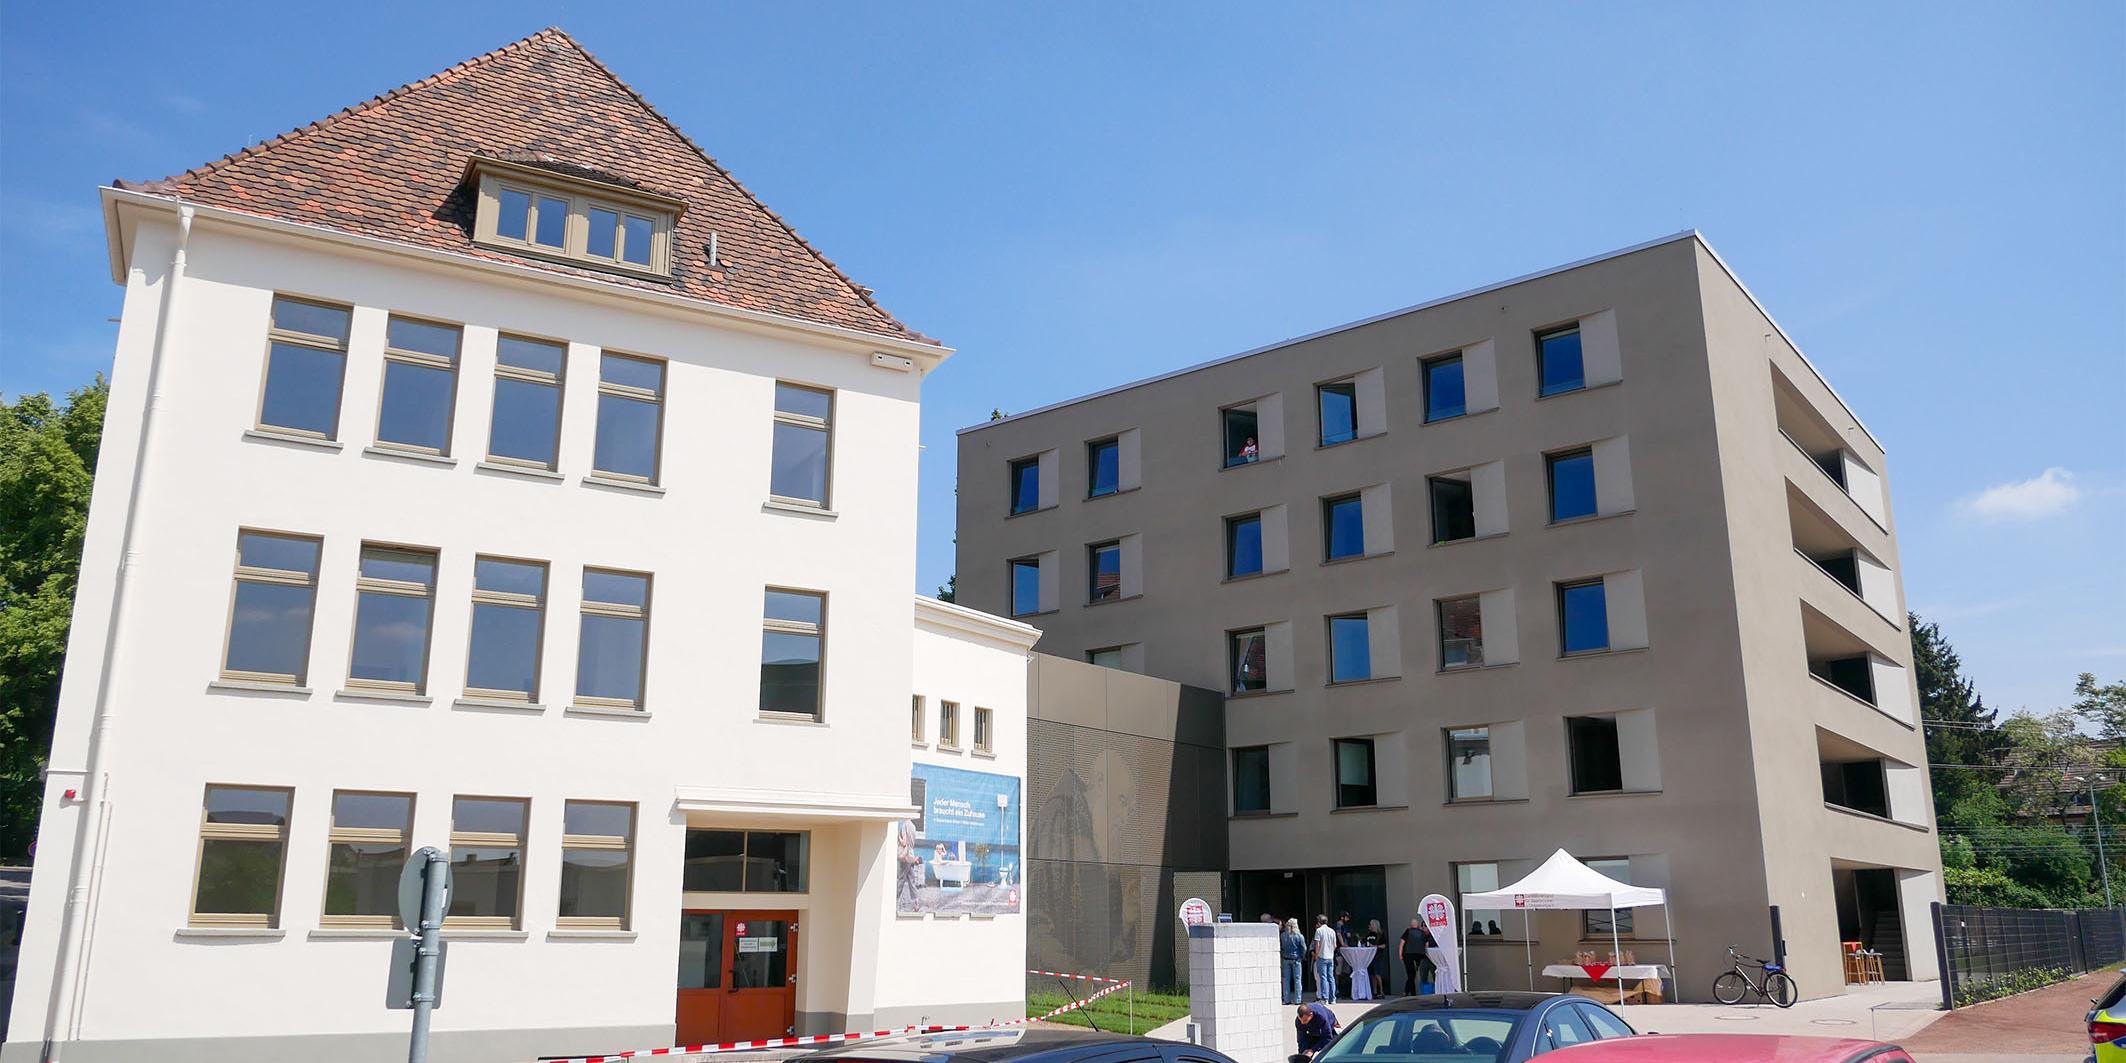 Der Neubau des Bruder-Konrad-Hauses (r.) neben dem alten Gebäude (l.), das im Zuge der Umbauarbeiten renoviert wurde.